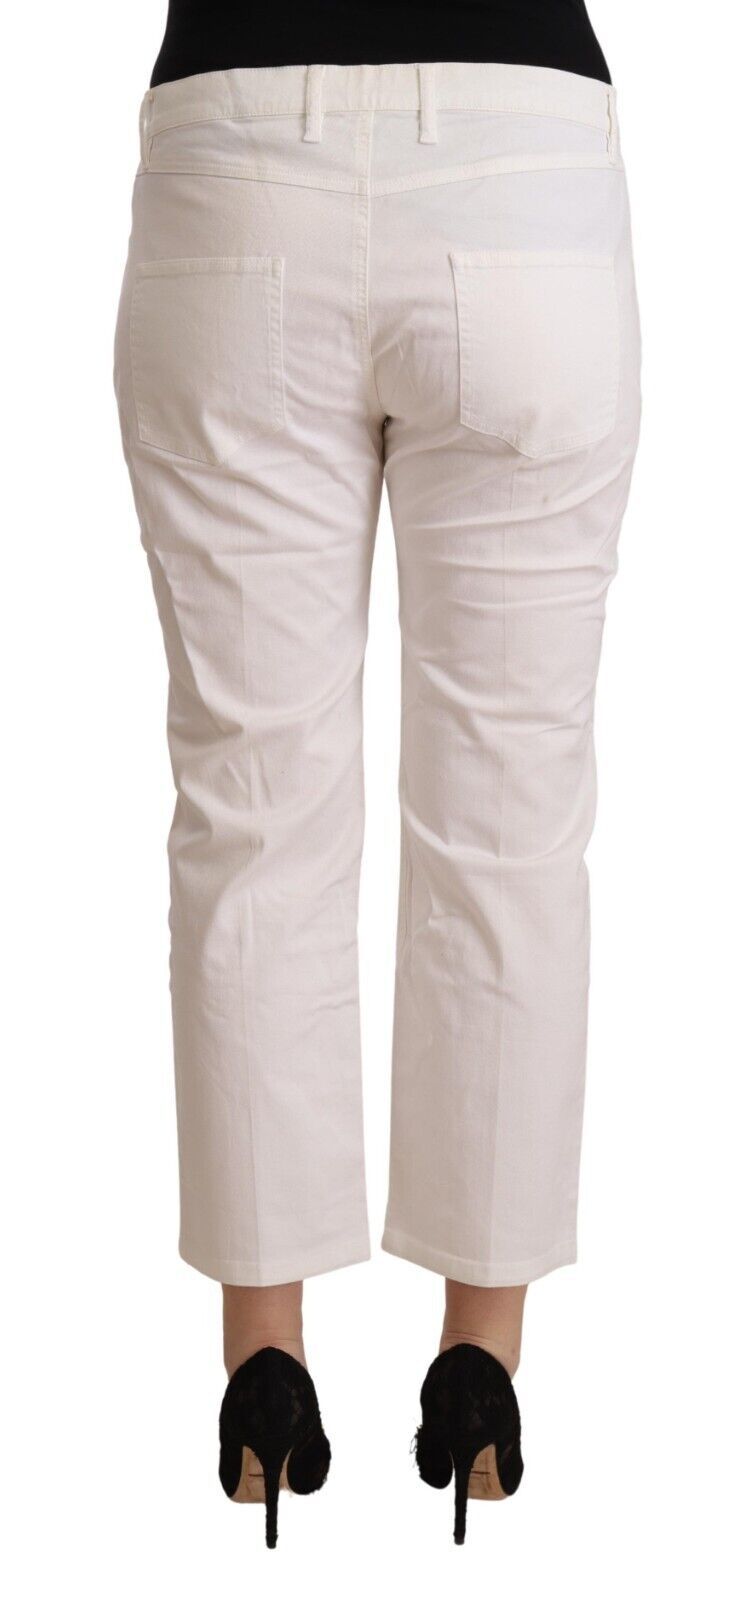 L'Auto ha scelto jeans in denim corto a metà vita di cotone bianco